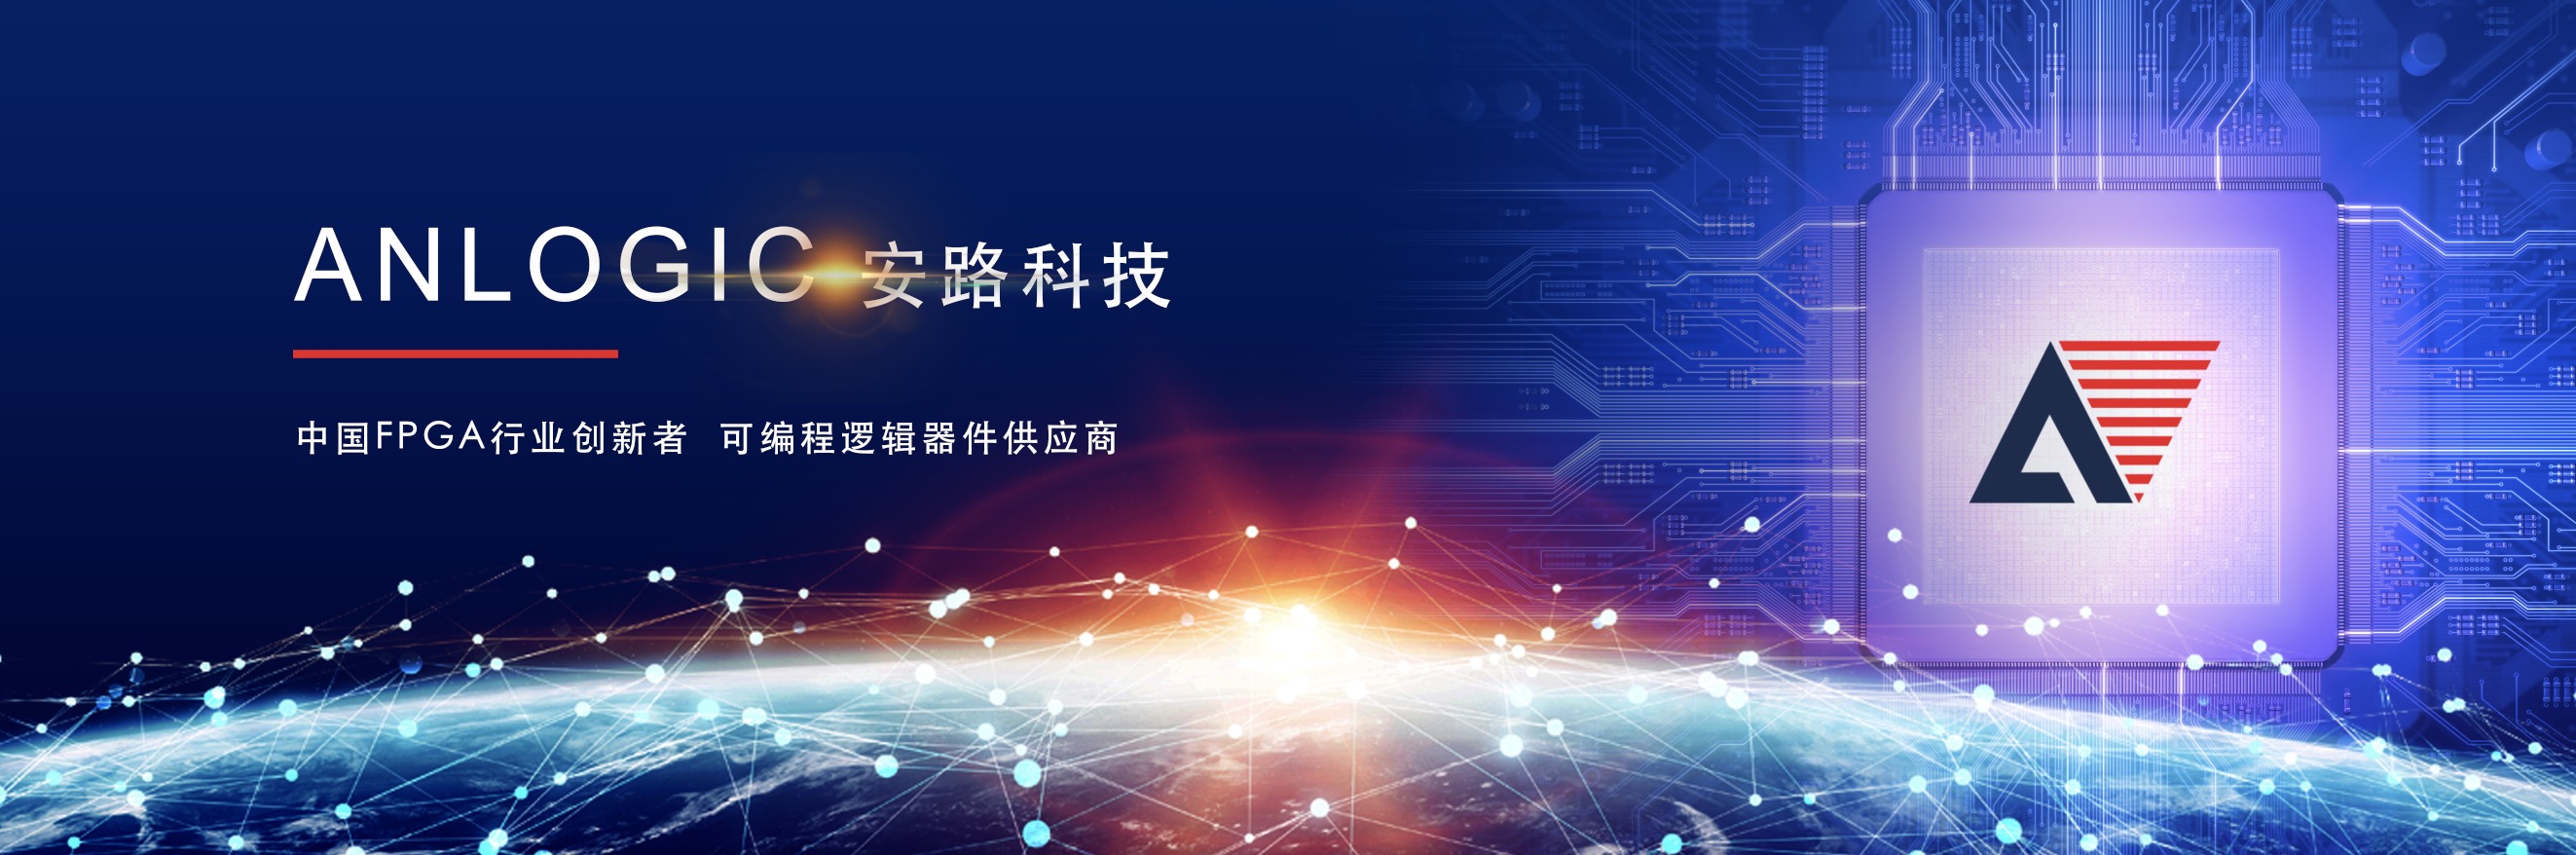 安路科技亮相第二届全球企业家大会暨IC China 2019